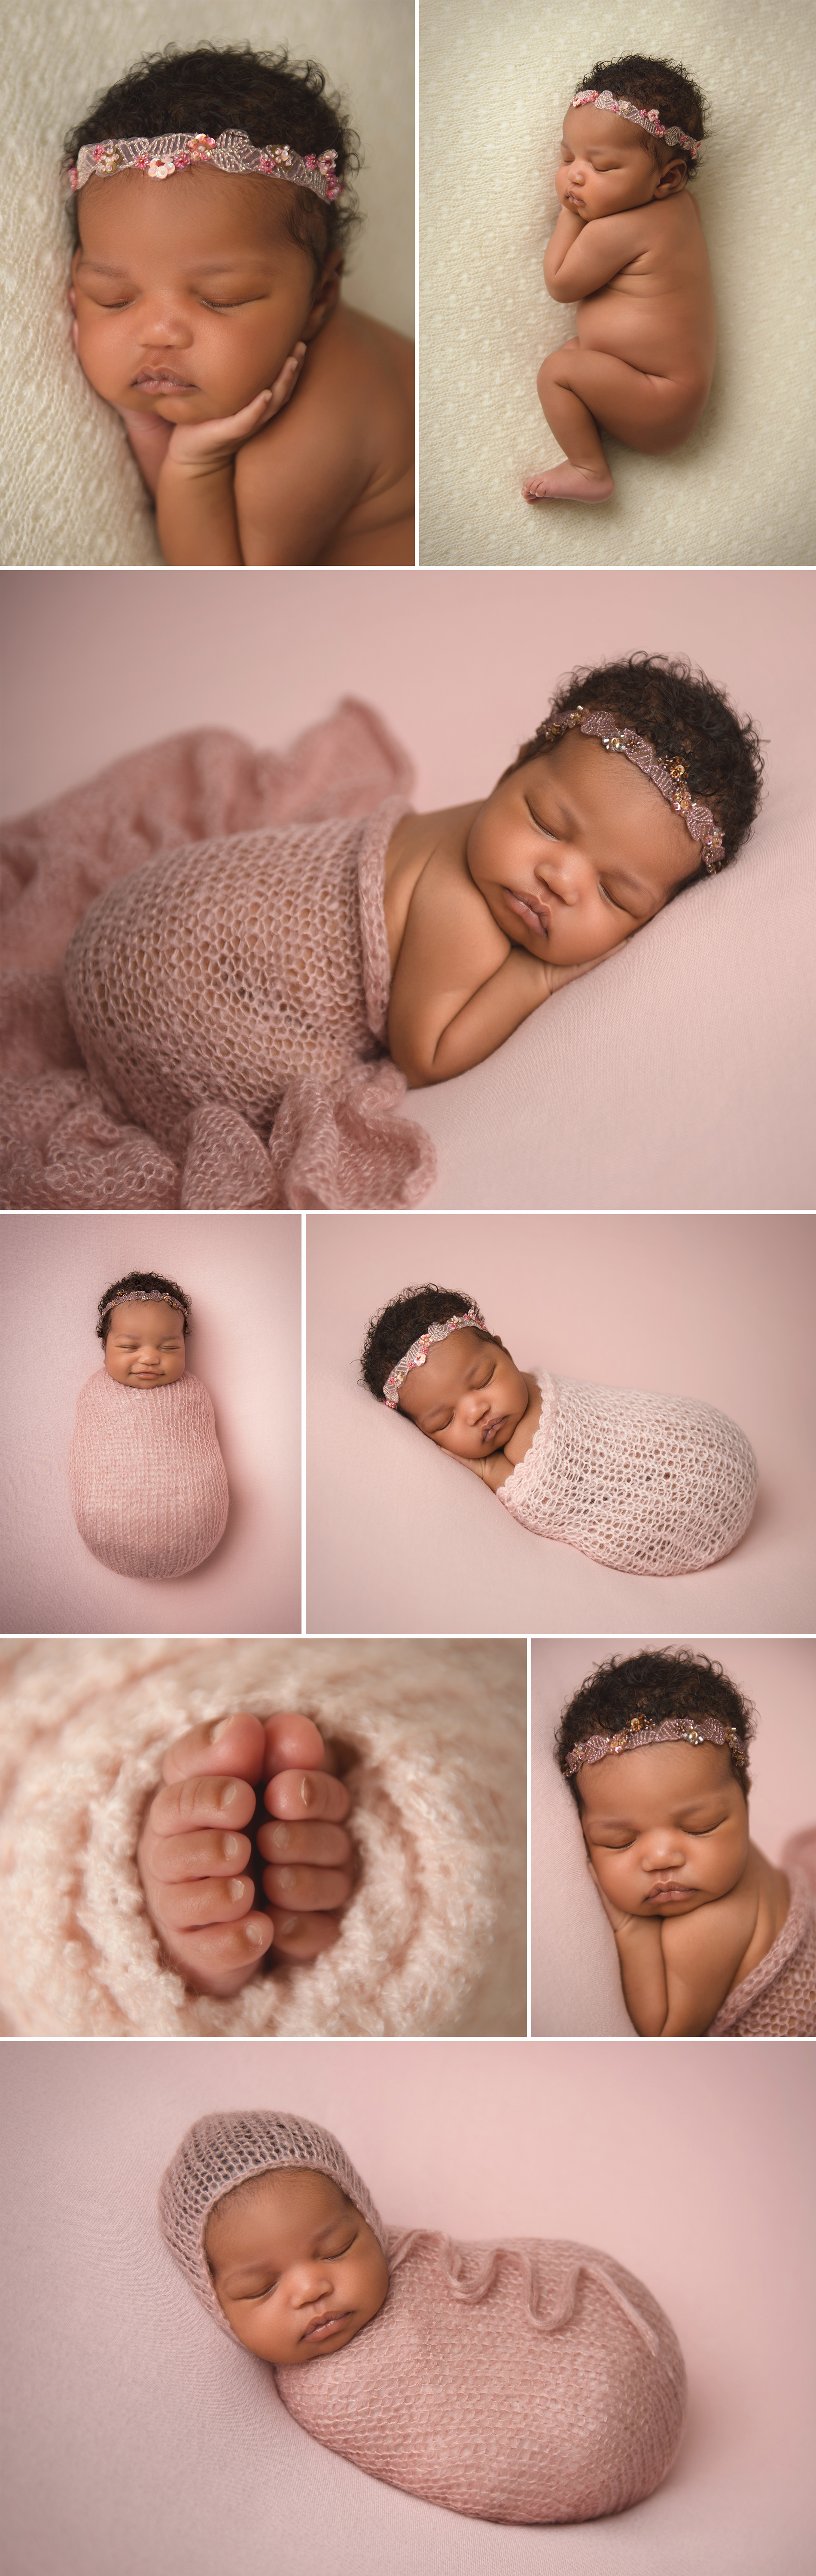 nyc newborn photographer manhattan studio